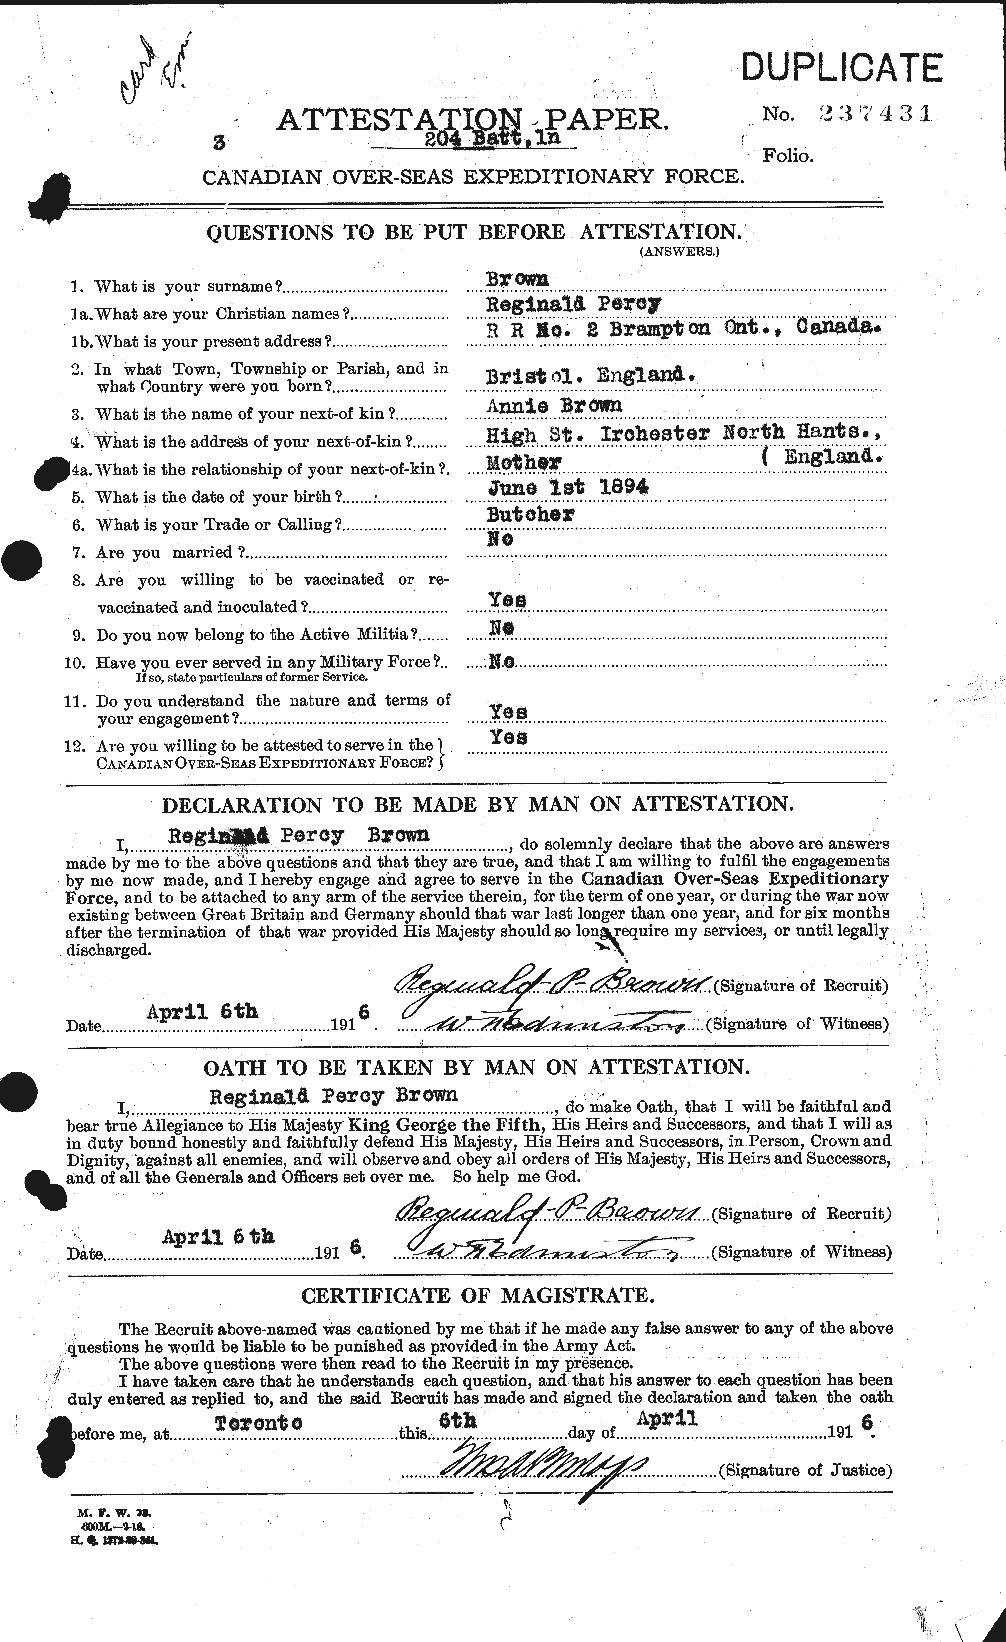 Dossiers du Personnel de la Première Guerre mondiale - CEC 267253a